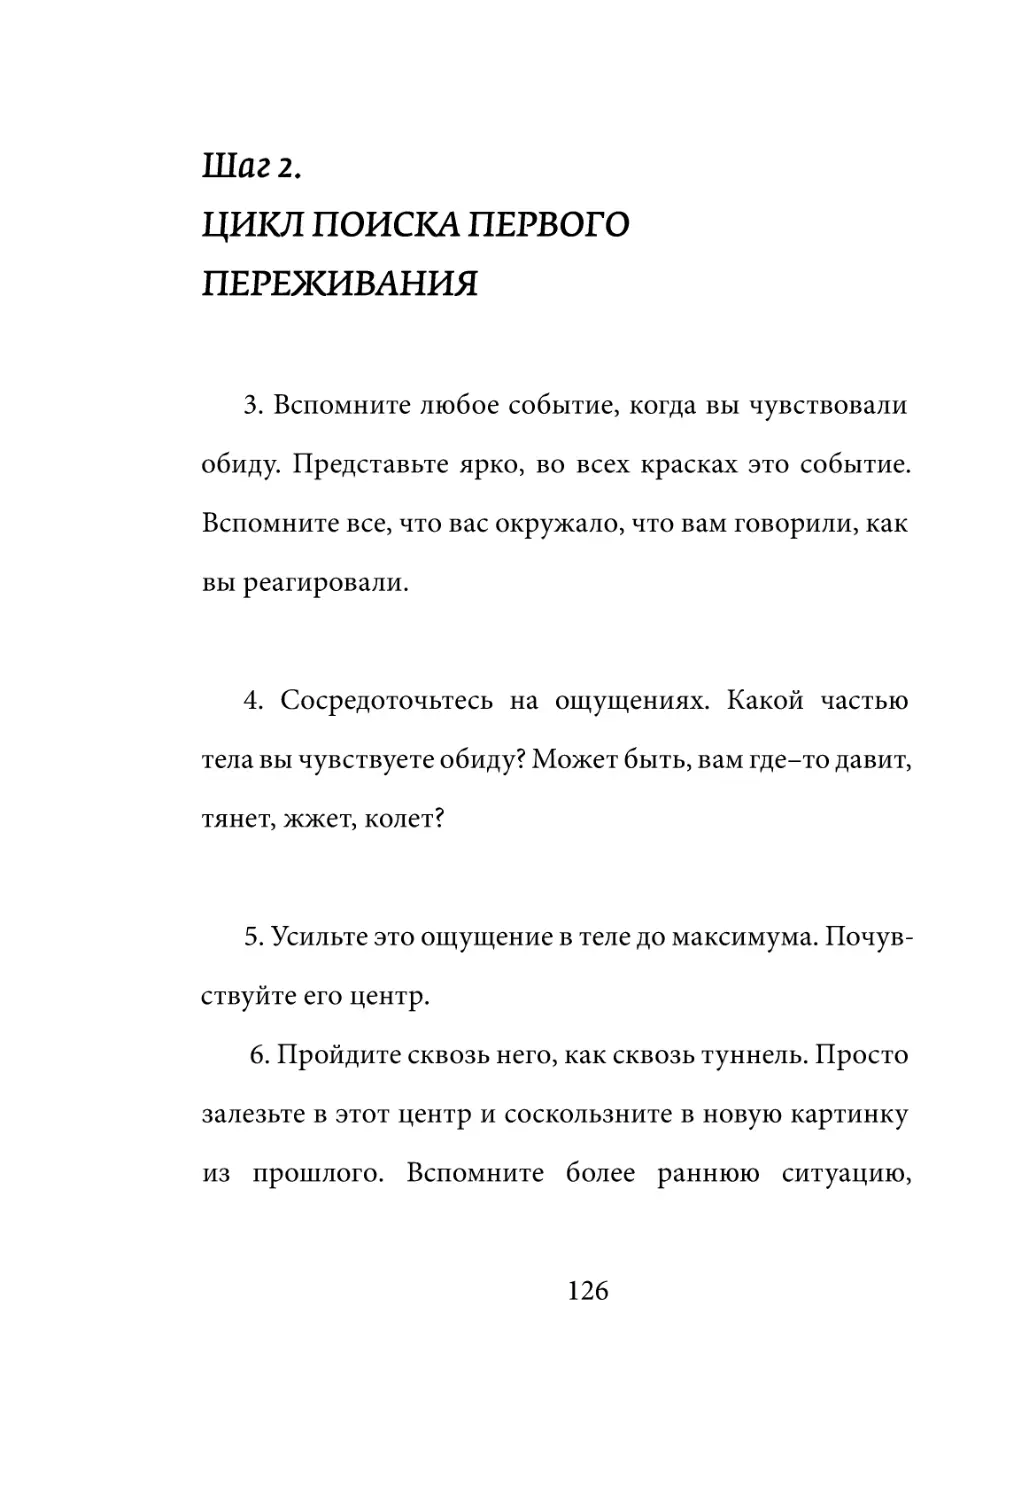 Sergey_Filippov_Dnevnik_samorazvitia_Evolyutsia_Vnutrennego_Sostoyania_126.pdf (p.126)